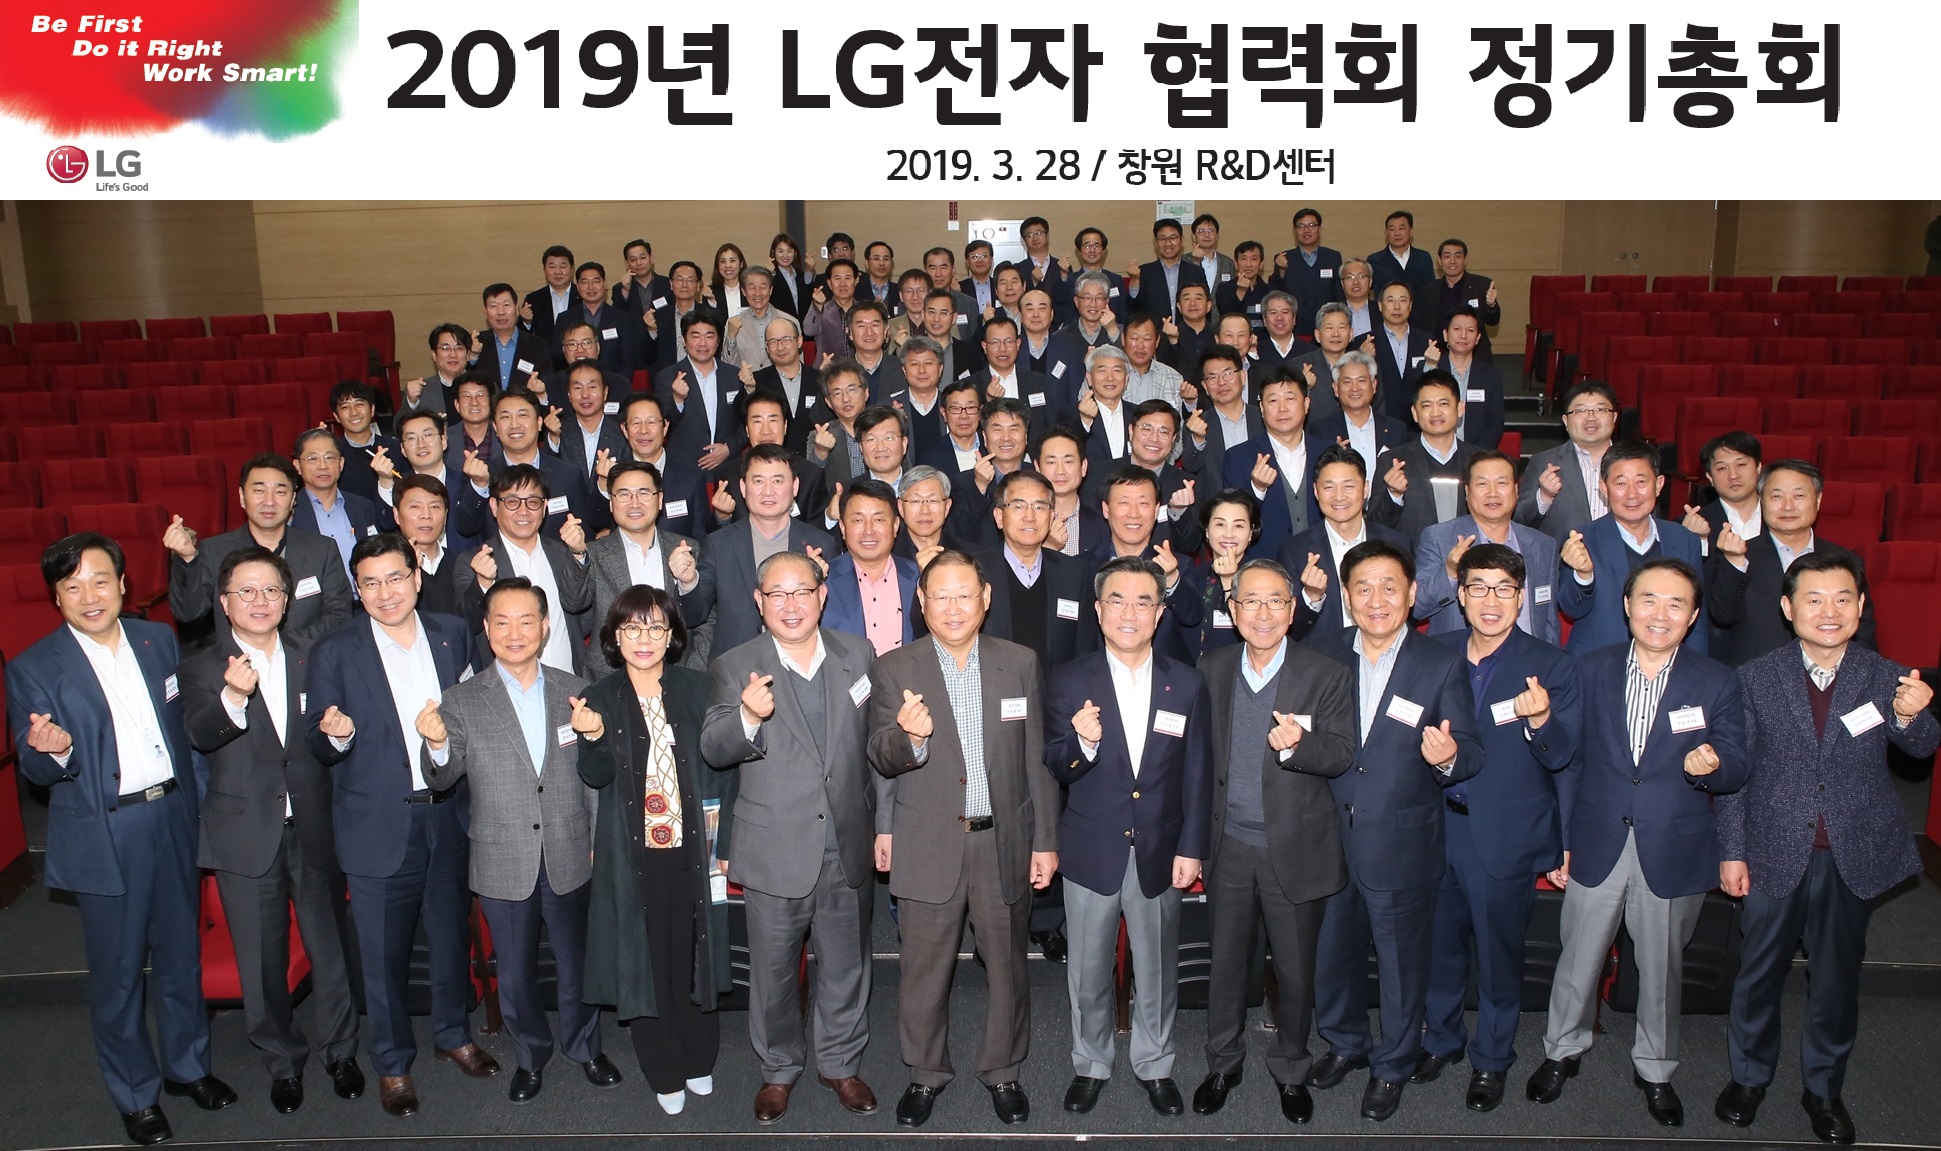 LG전자-협력사, “미래사업 준비의 핵심 경쟁력은 相生”